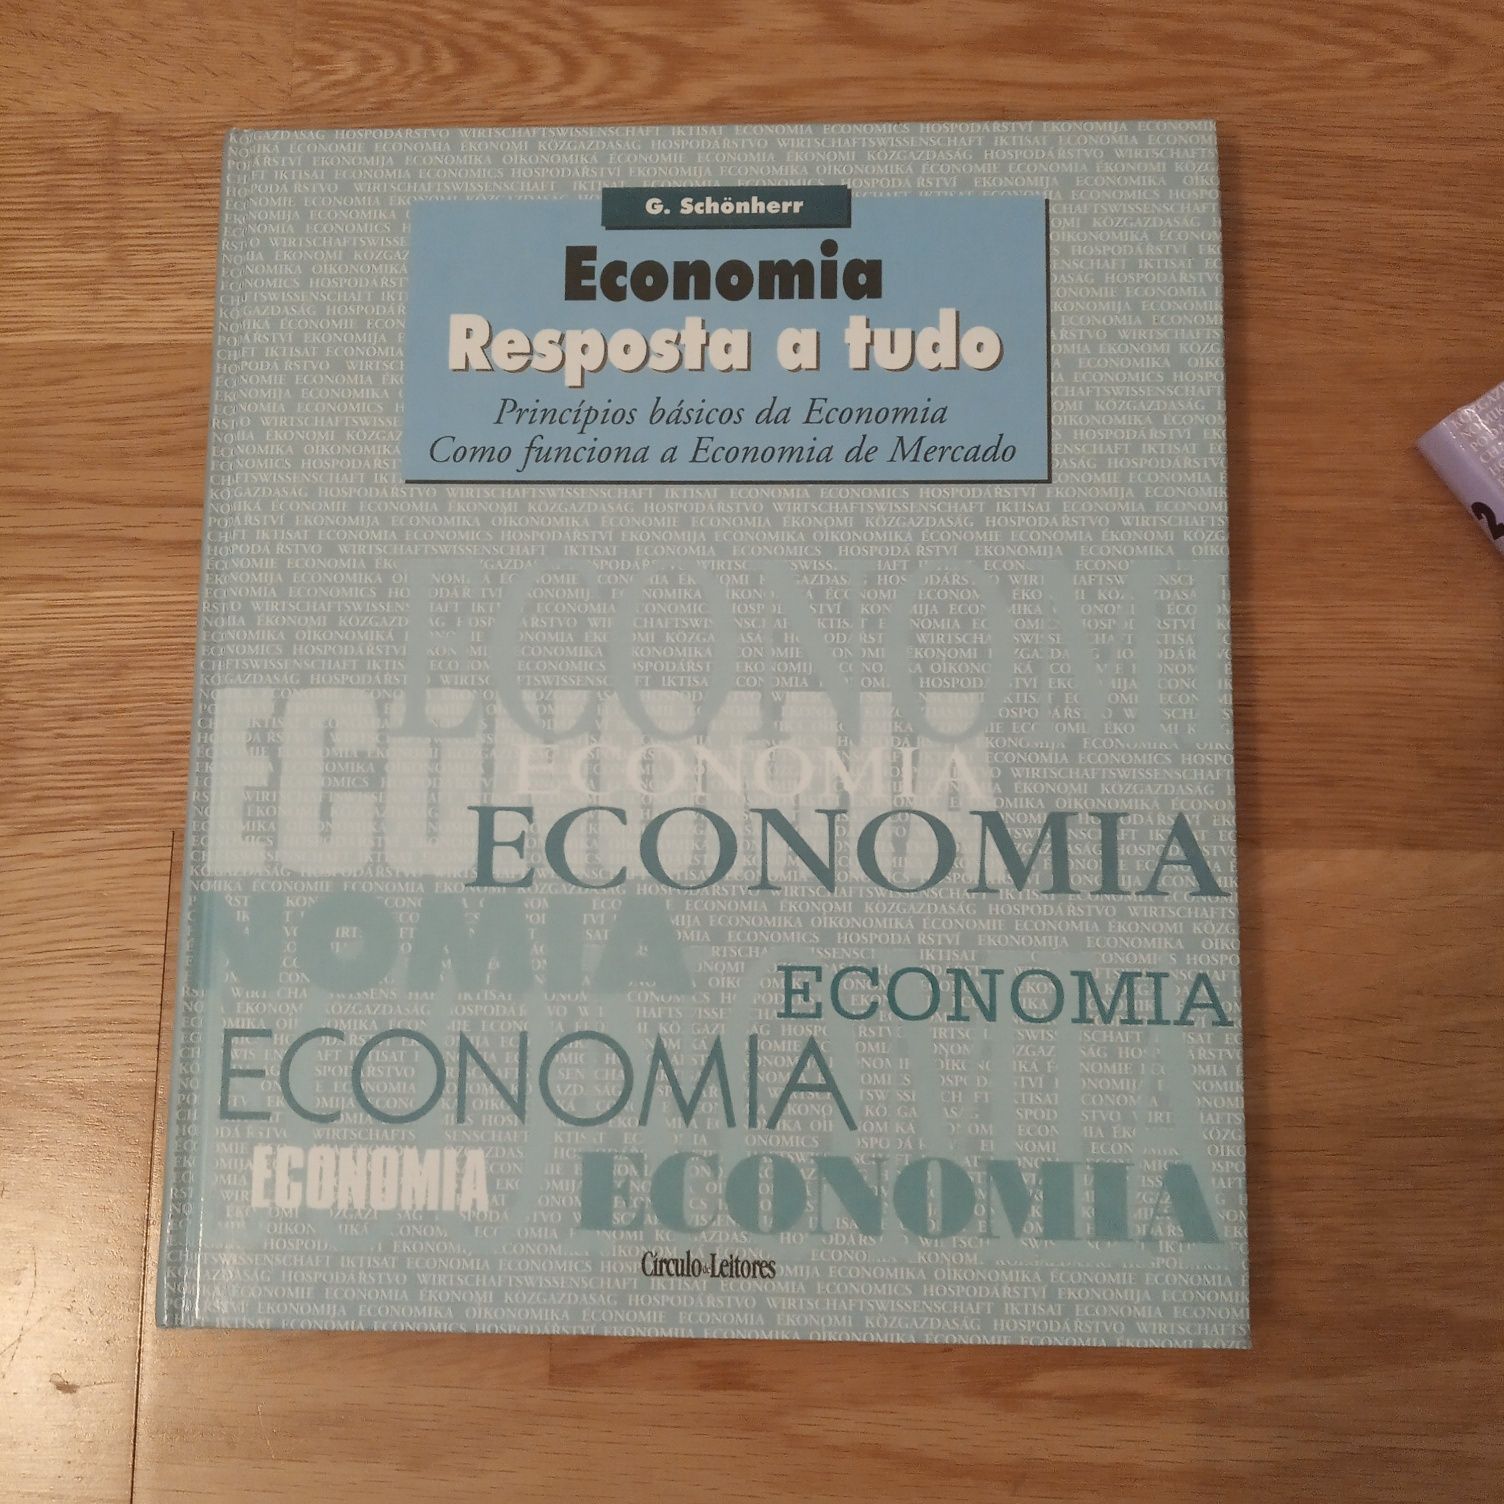 Coleção de livros "Economia - resposta a tudo" - círculo de leitores